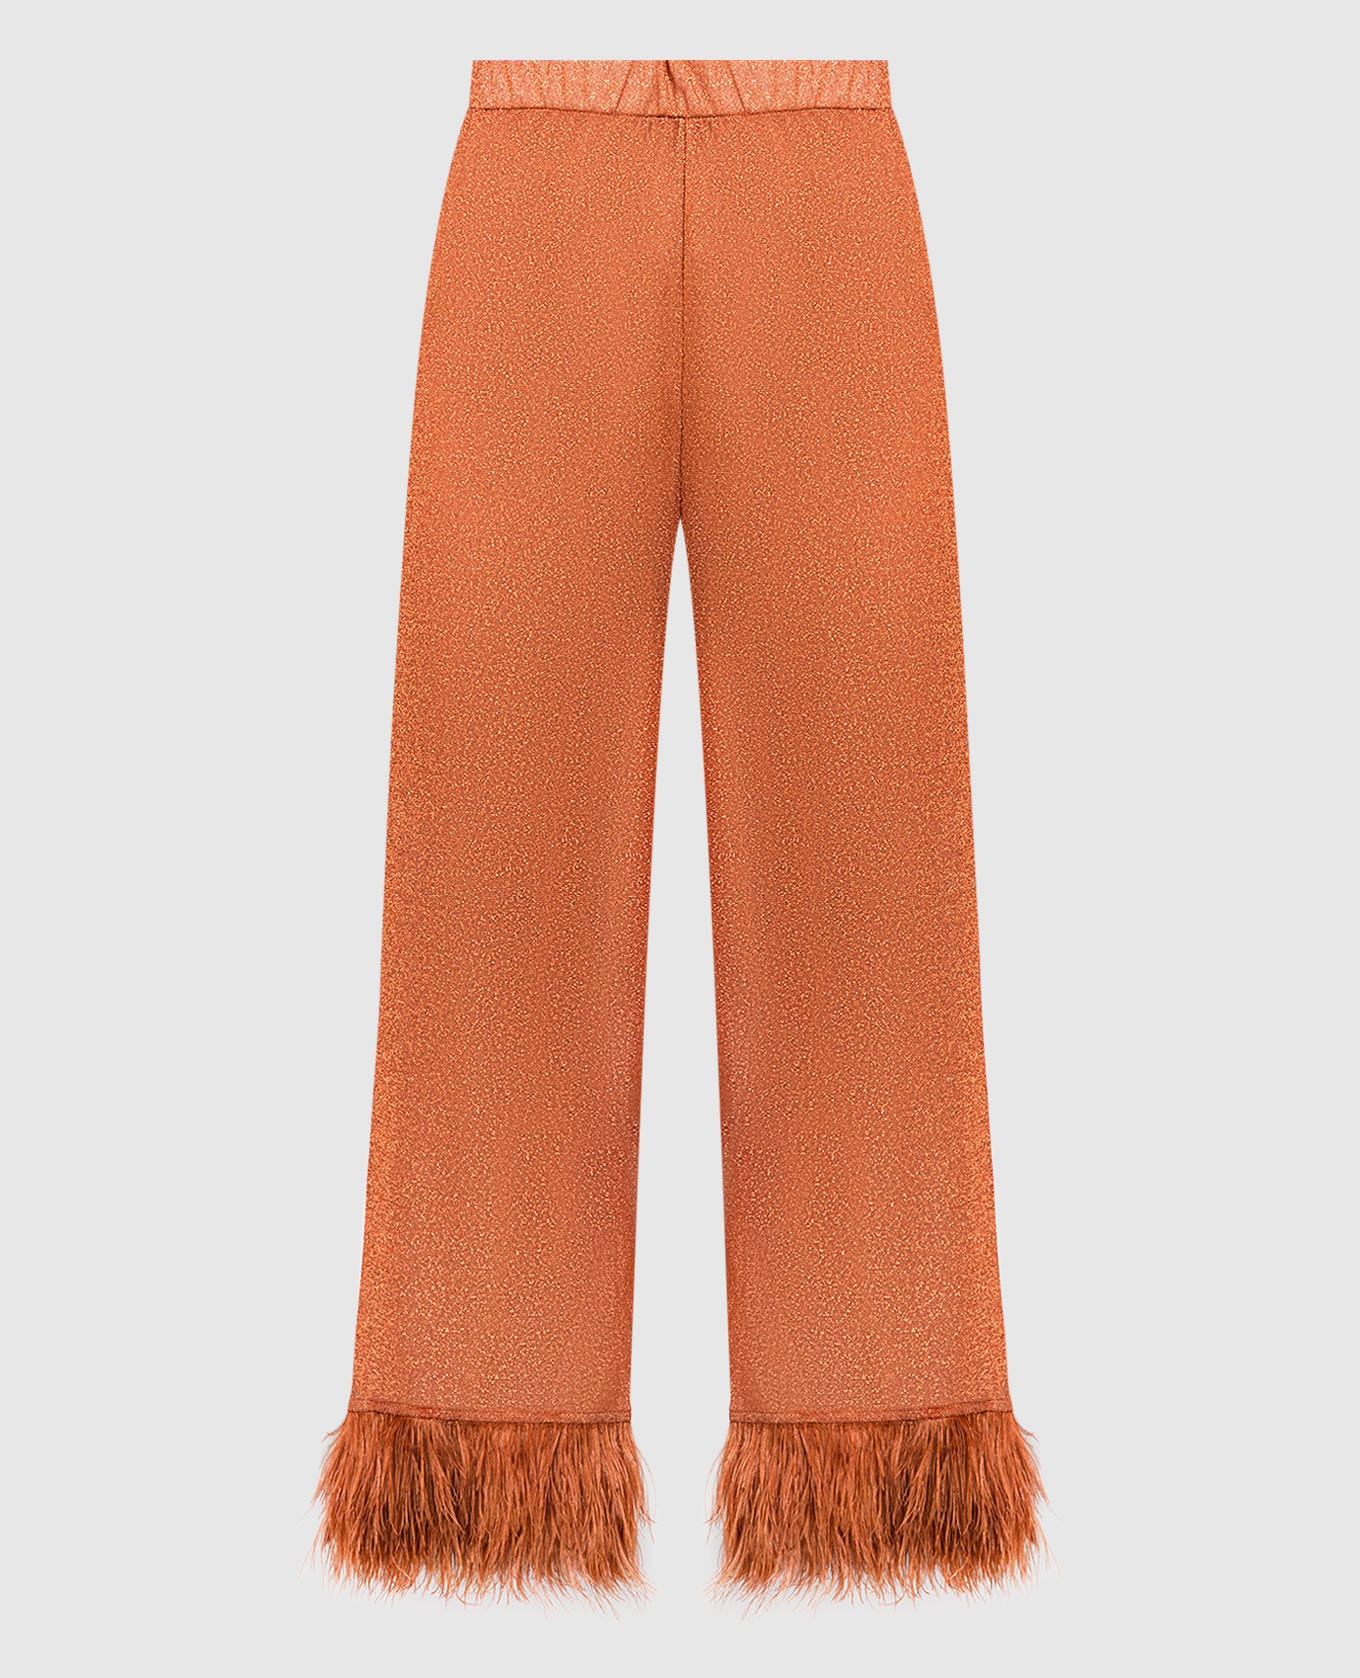 Оранжевые брюки HS22 Lumiere Plumage со страусиными перьями